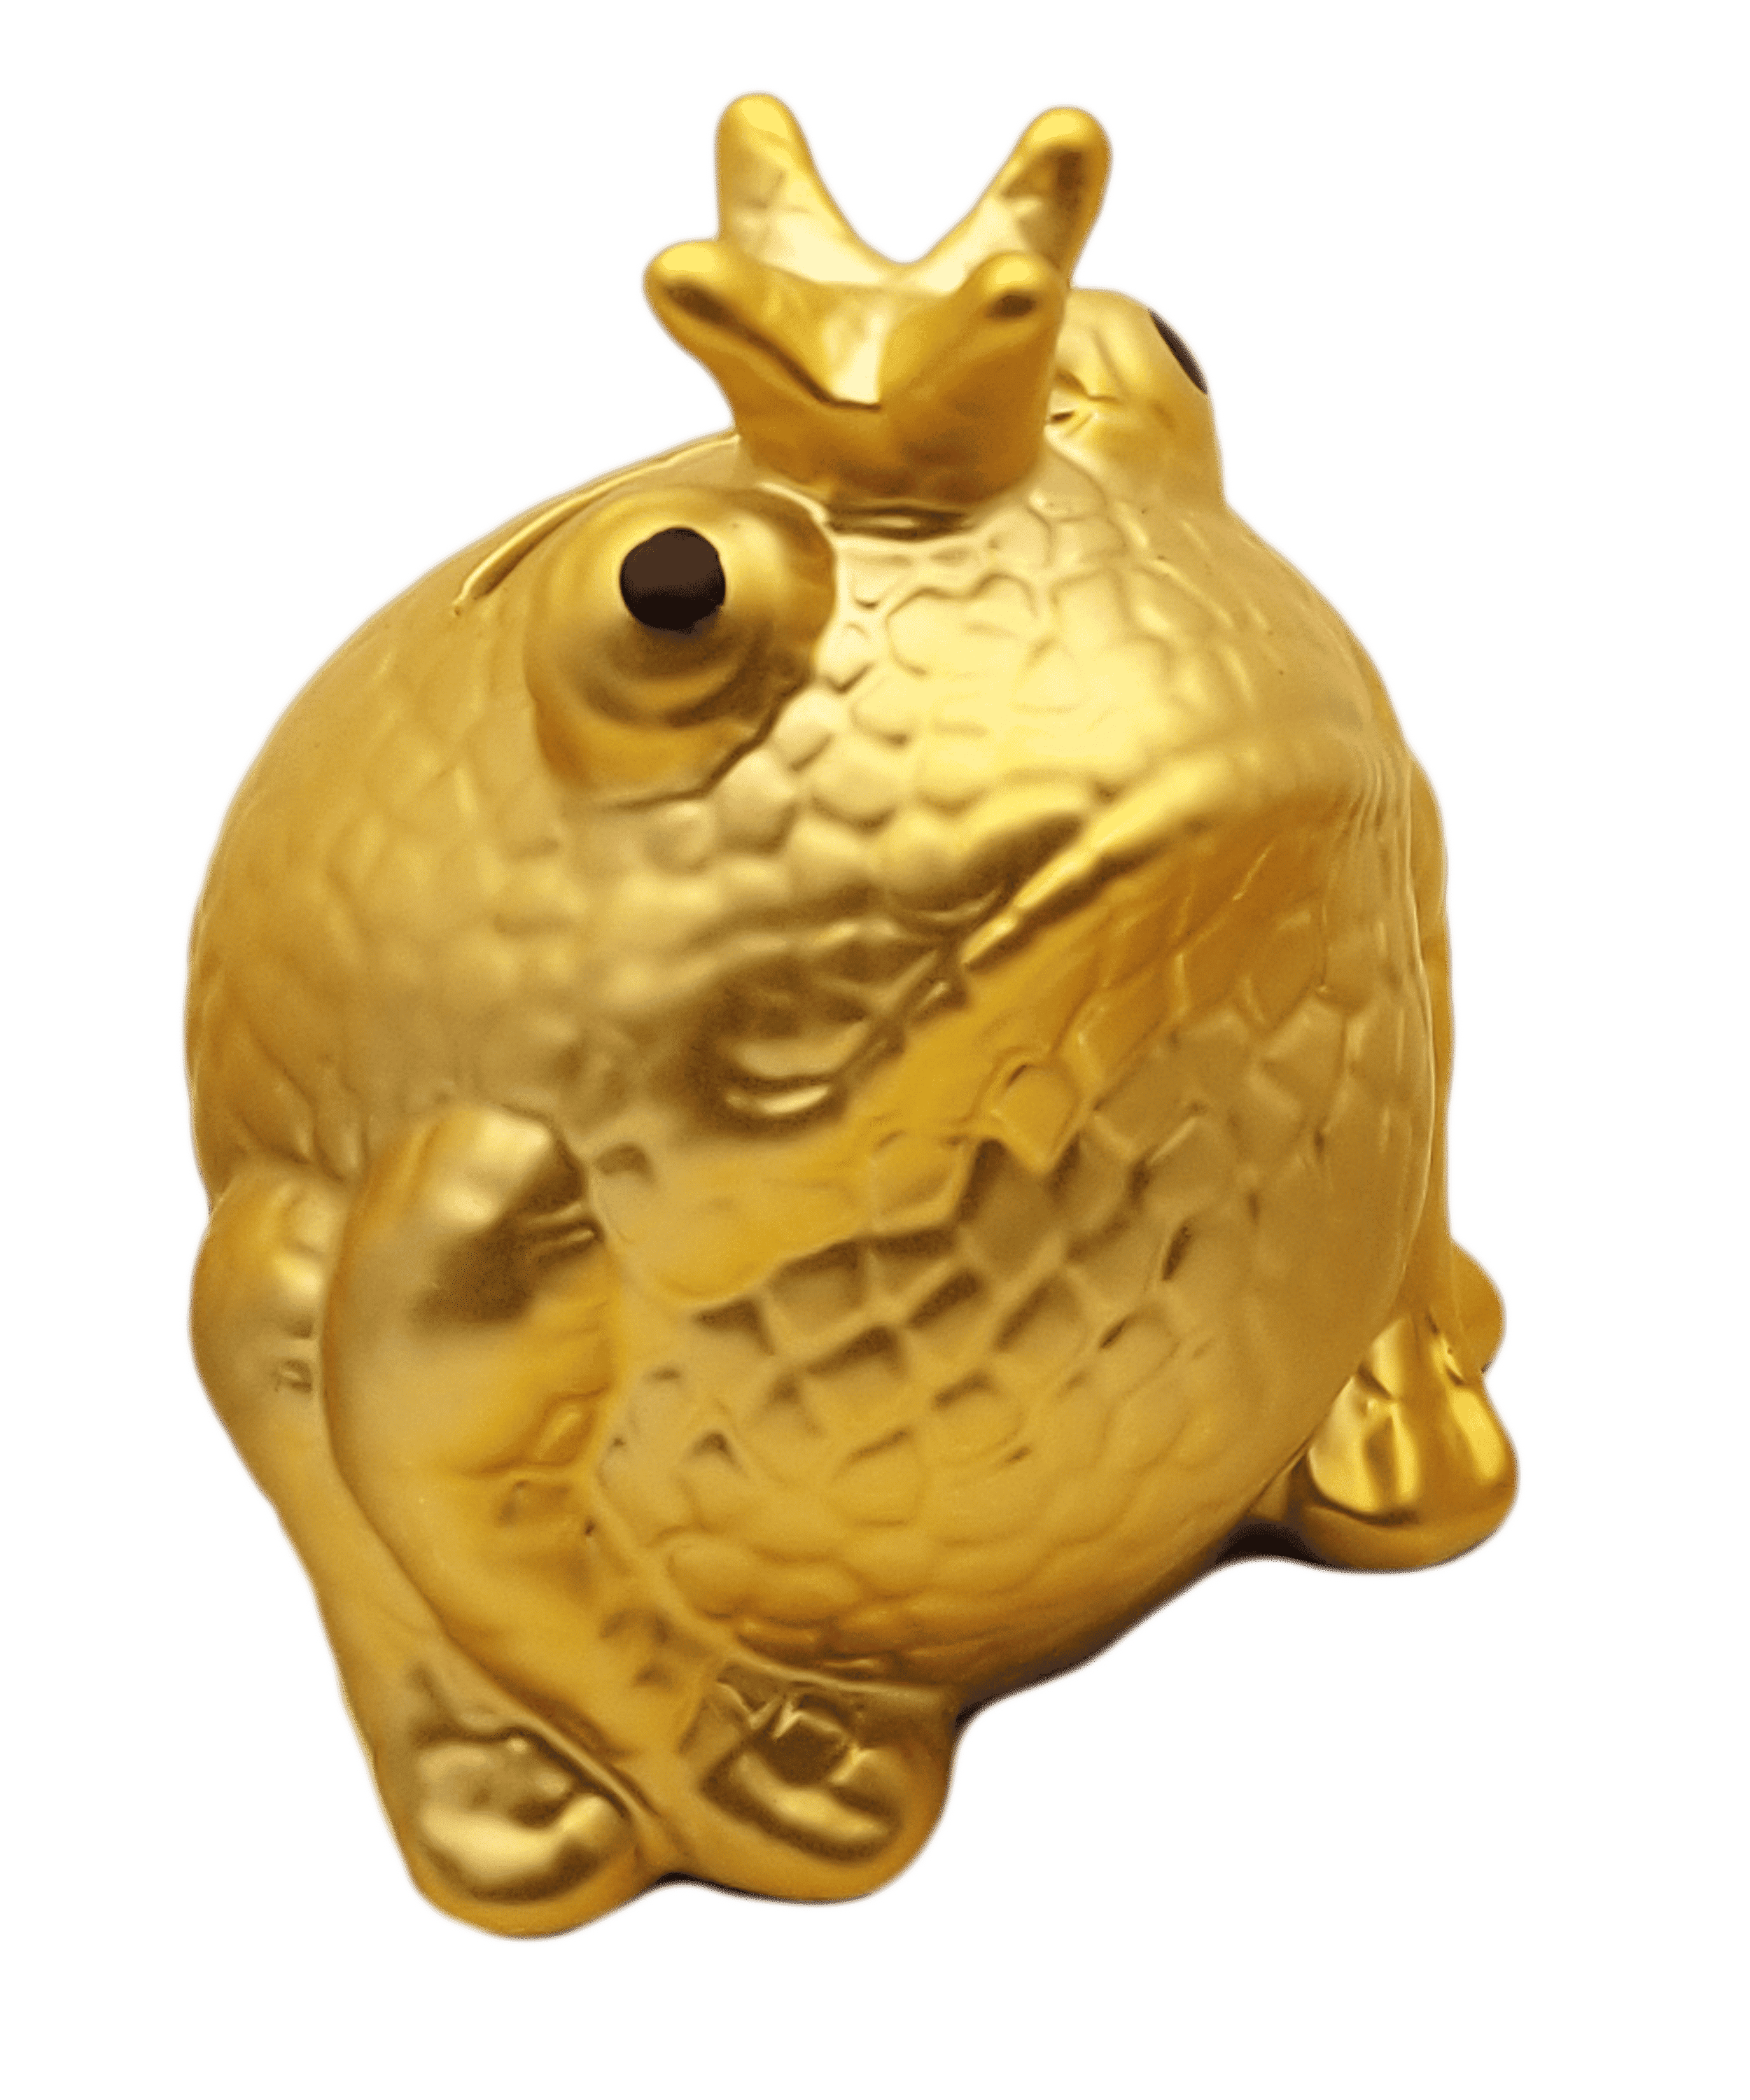 PommePidou - exklusive Spardose "Frogmania" Gold